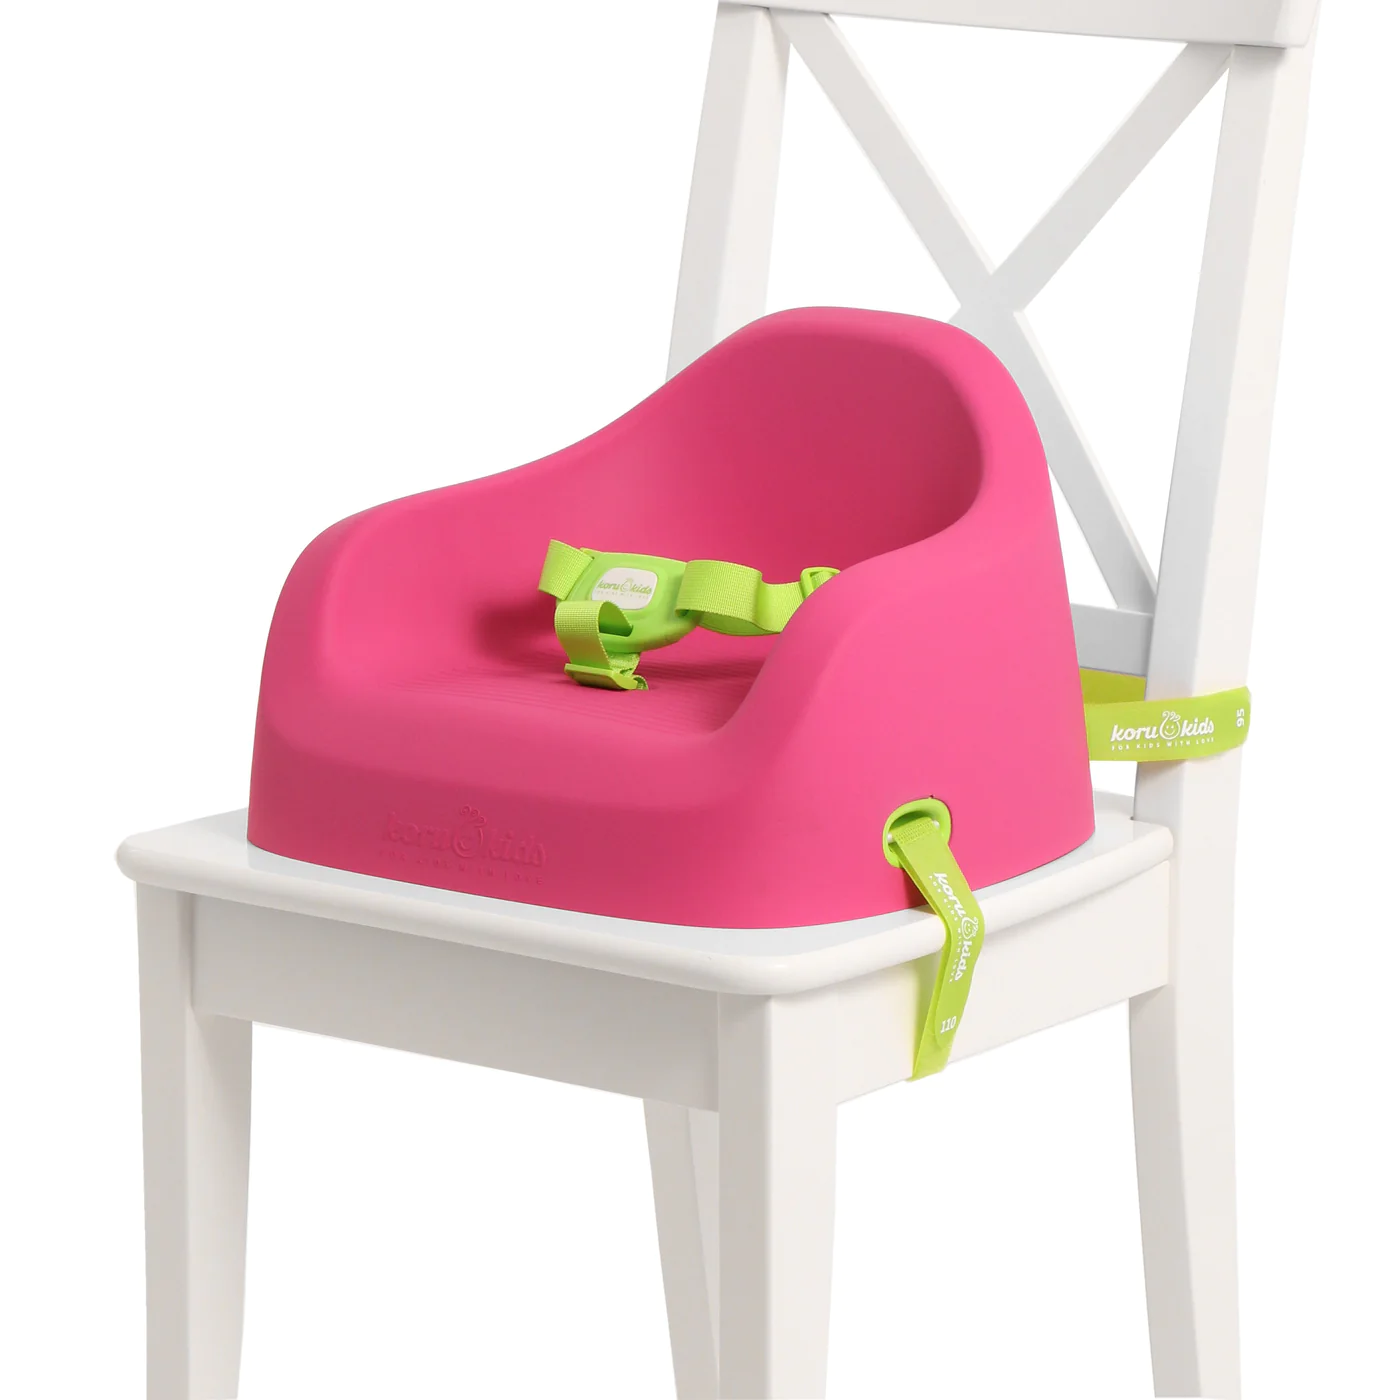 Erleben Sie die perfekte Kombination aus Stil und Funktionalität mit unserem modernen Sitzerhöhungsstuhl